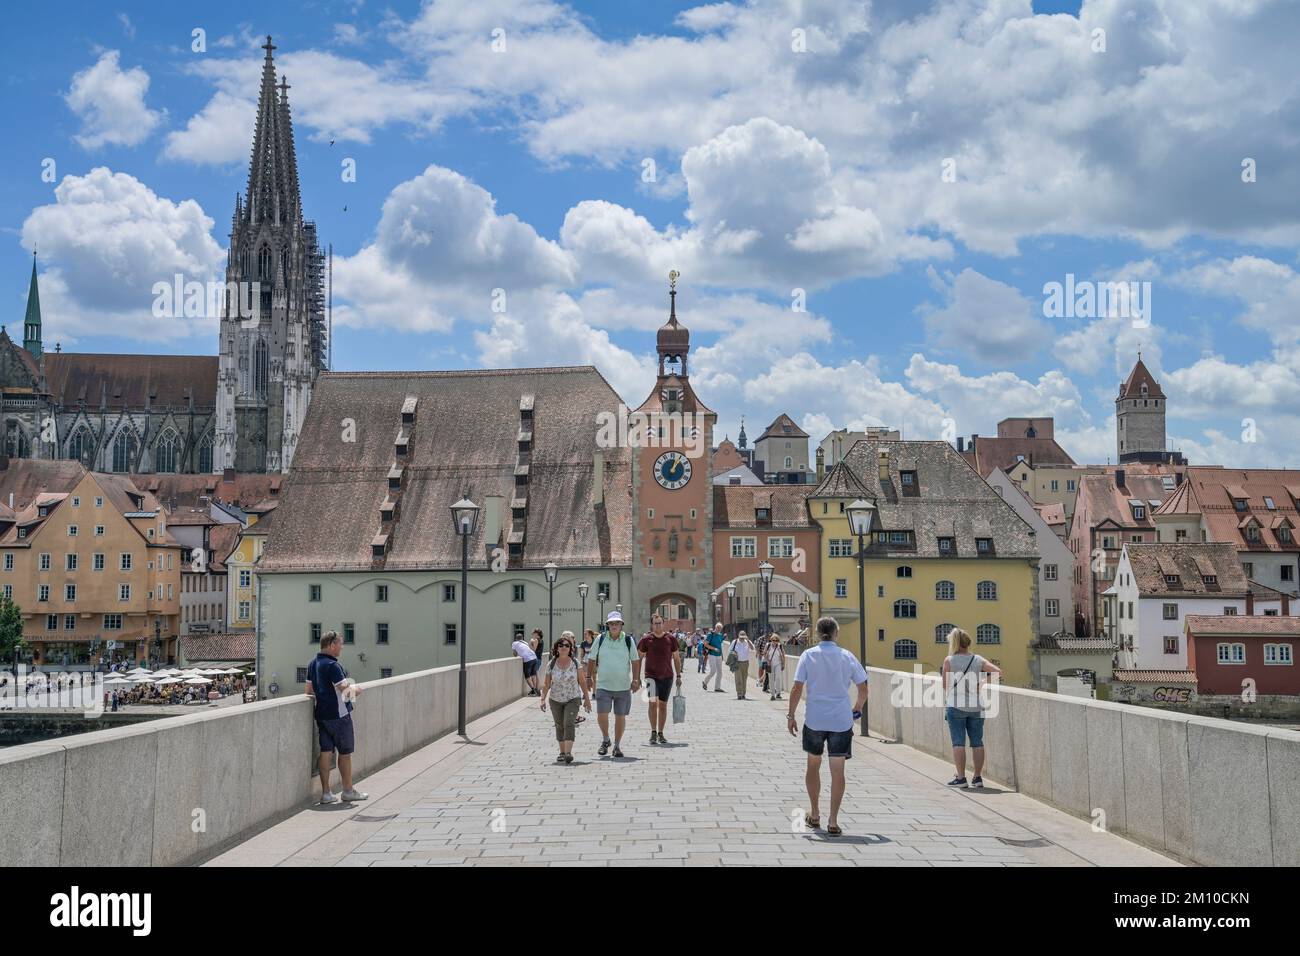 Passanten, Steinerne Brücke, Altstadt, Regensburg, Bayern, Deutschland Stock Photo